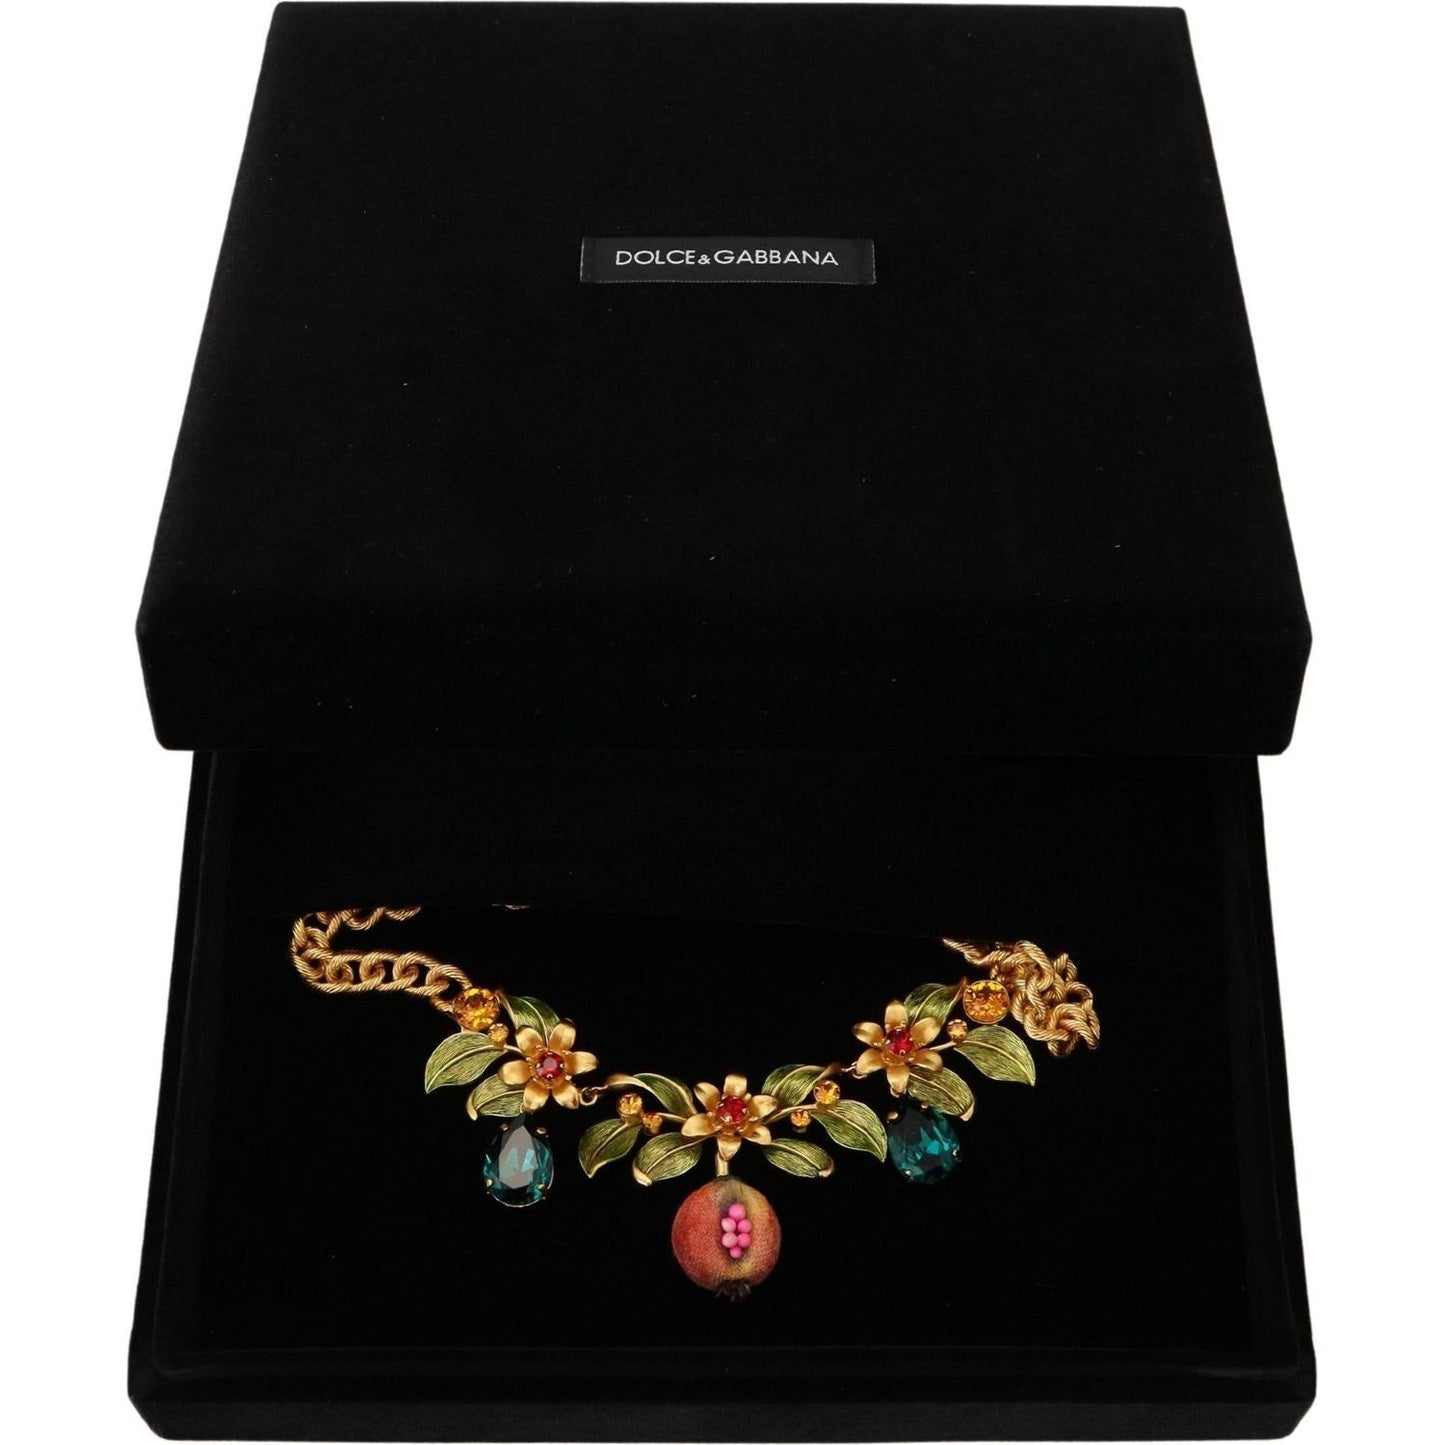 Dolce & Gabbana Elegant Floral Fruit Motif Gold Necklace gold-brass-crystal-logo-fruit-floral-statement-necklace IMG_7483-1-bdeb47d3-3f6.jpg